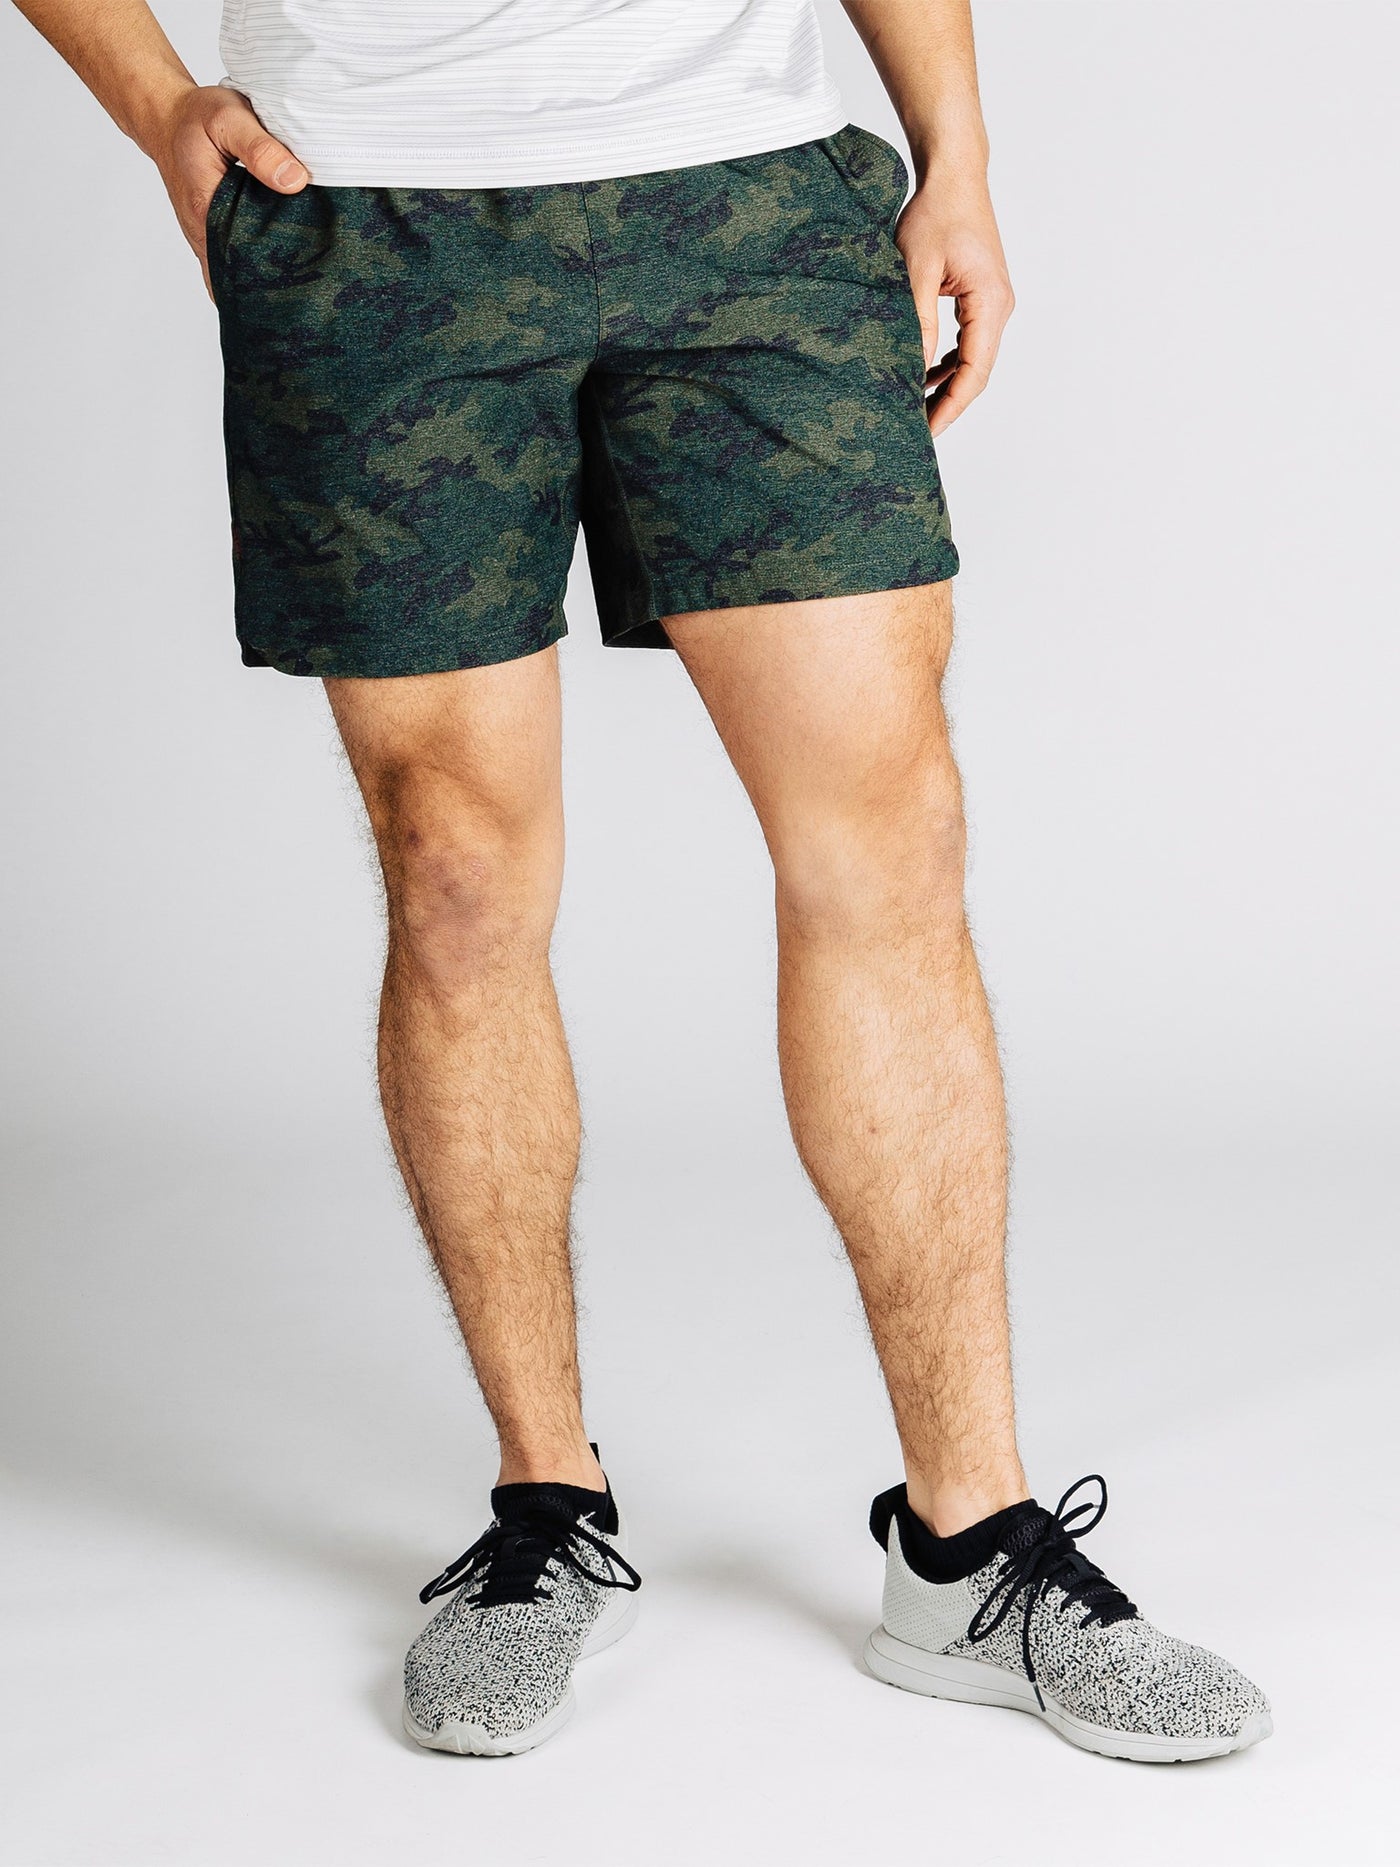 RHONE Guru 7" Unlined Yoga Shorts Men's Gym Shorts Green Camo - Activemen Clothing